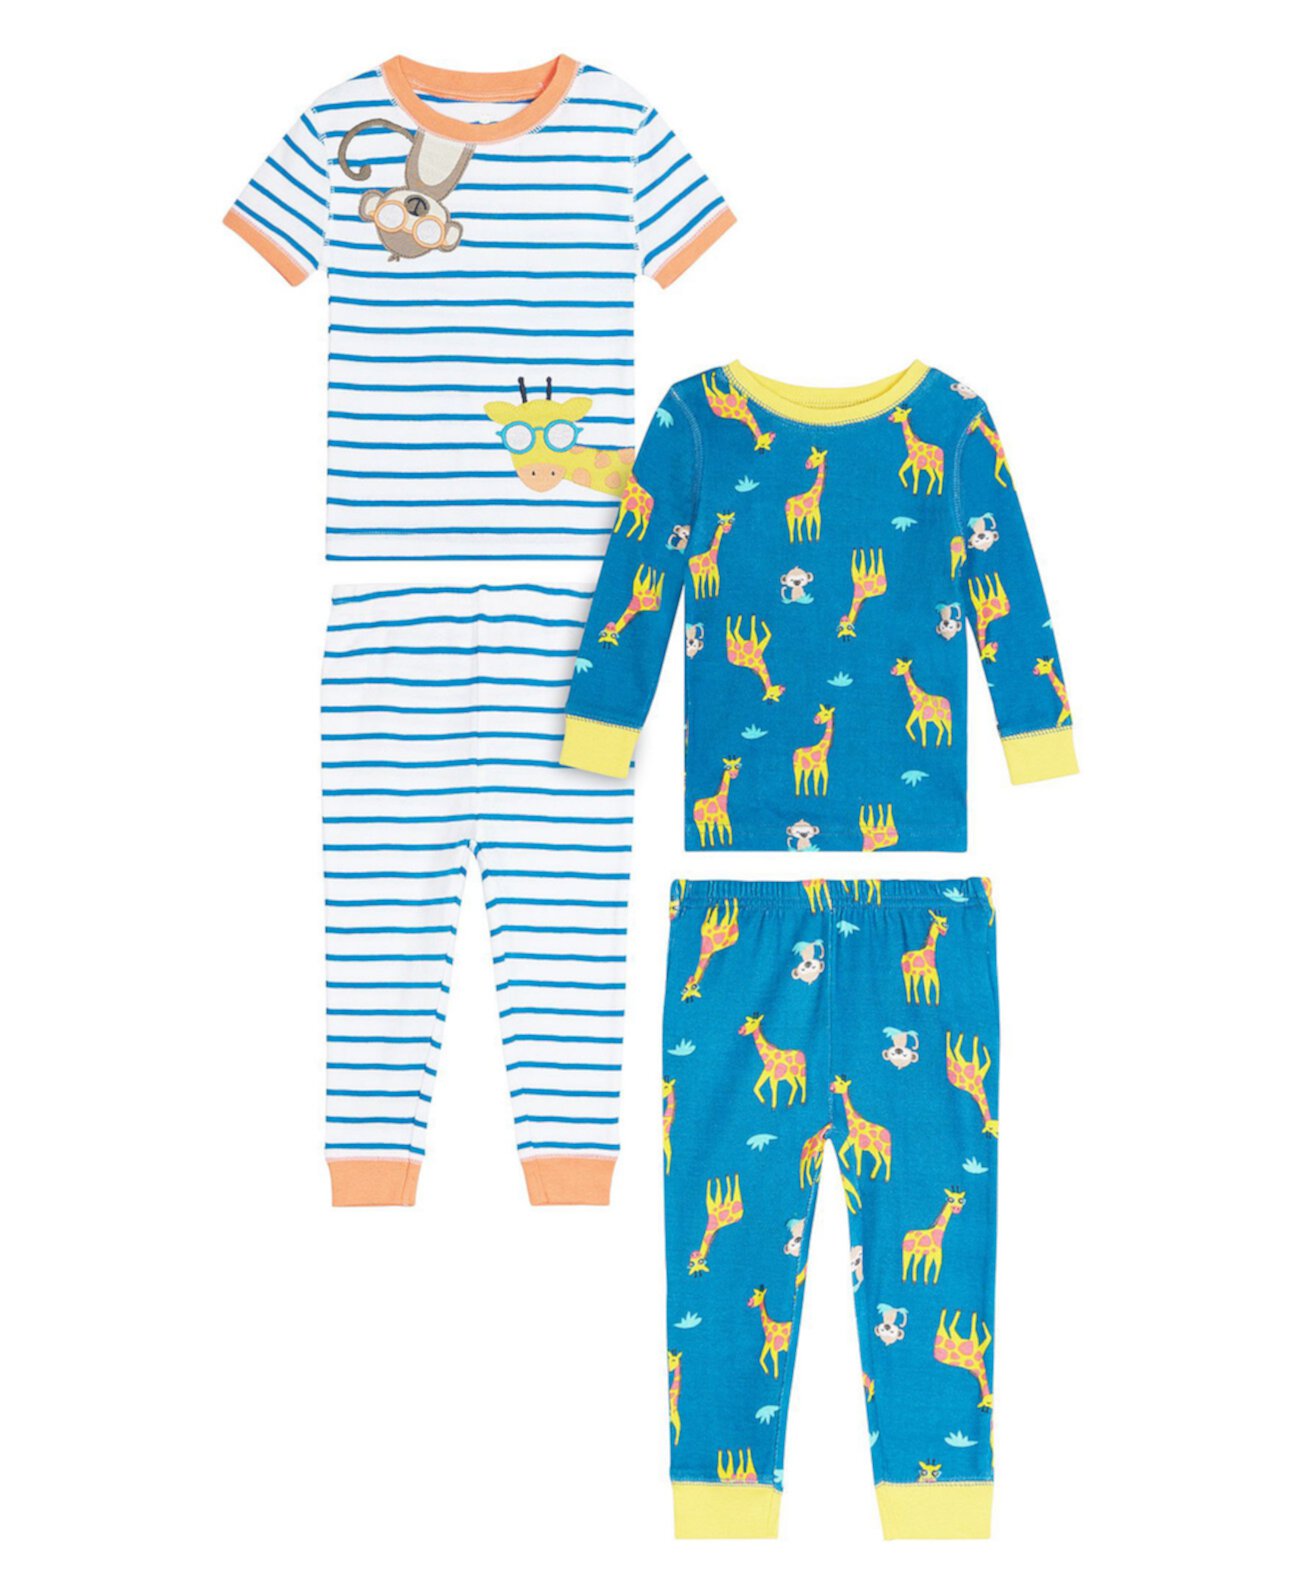 Одежда для сна для новорожденных мальчиков с жирафом, комплект из 4 предметов Koala baby